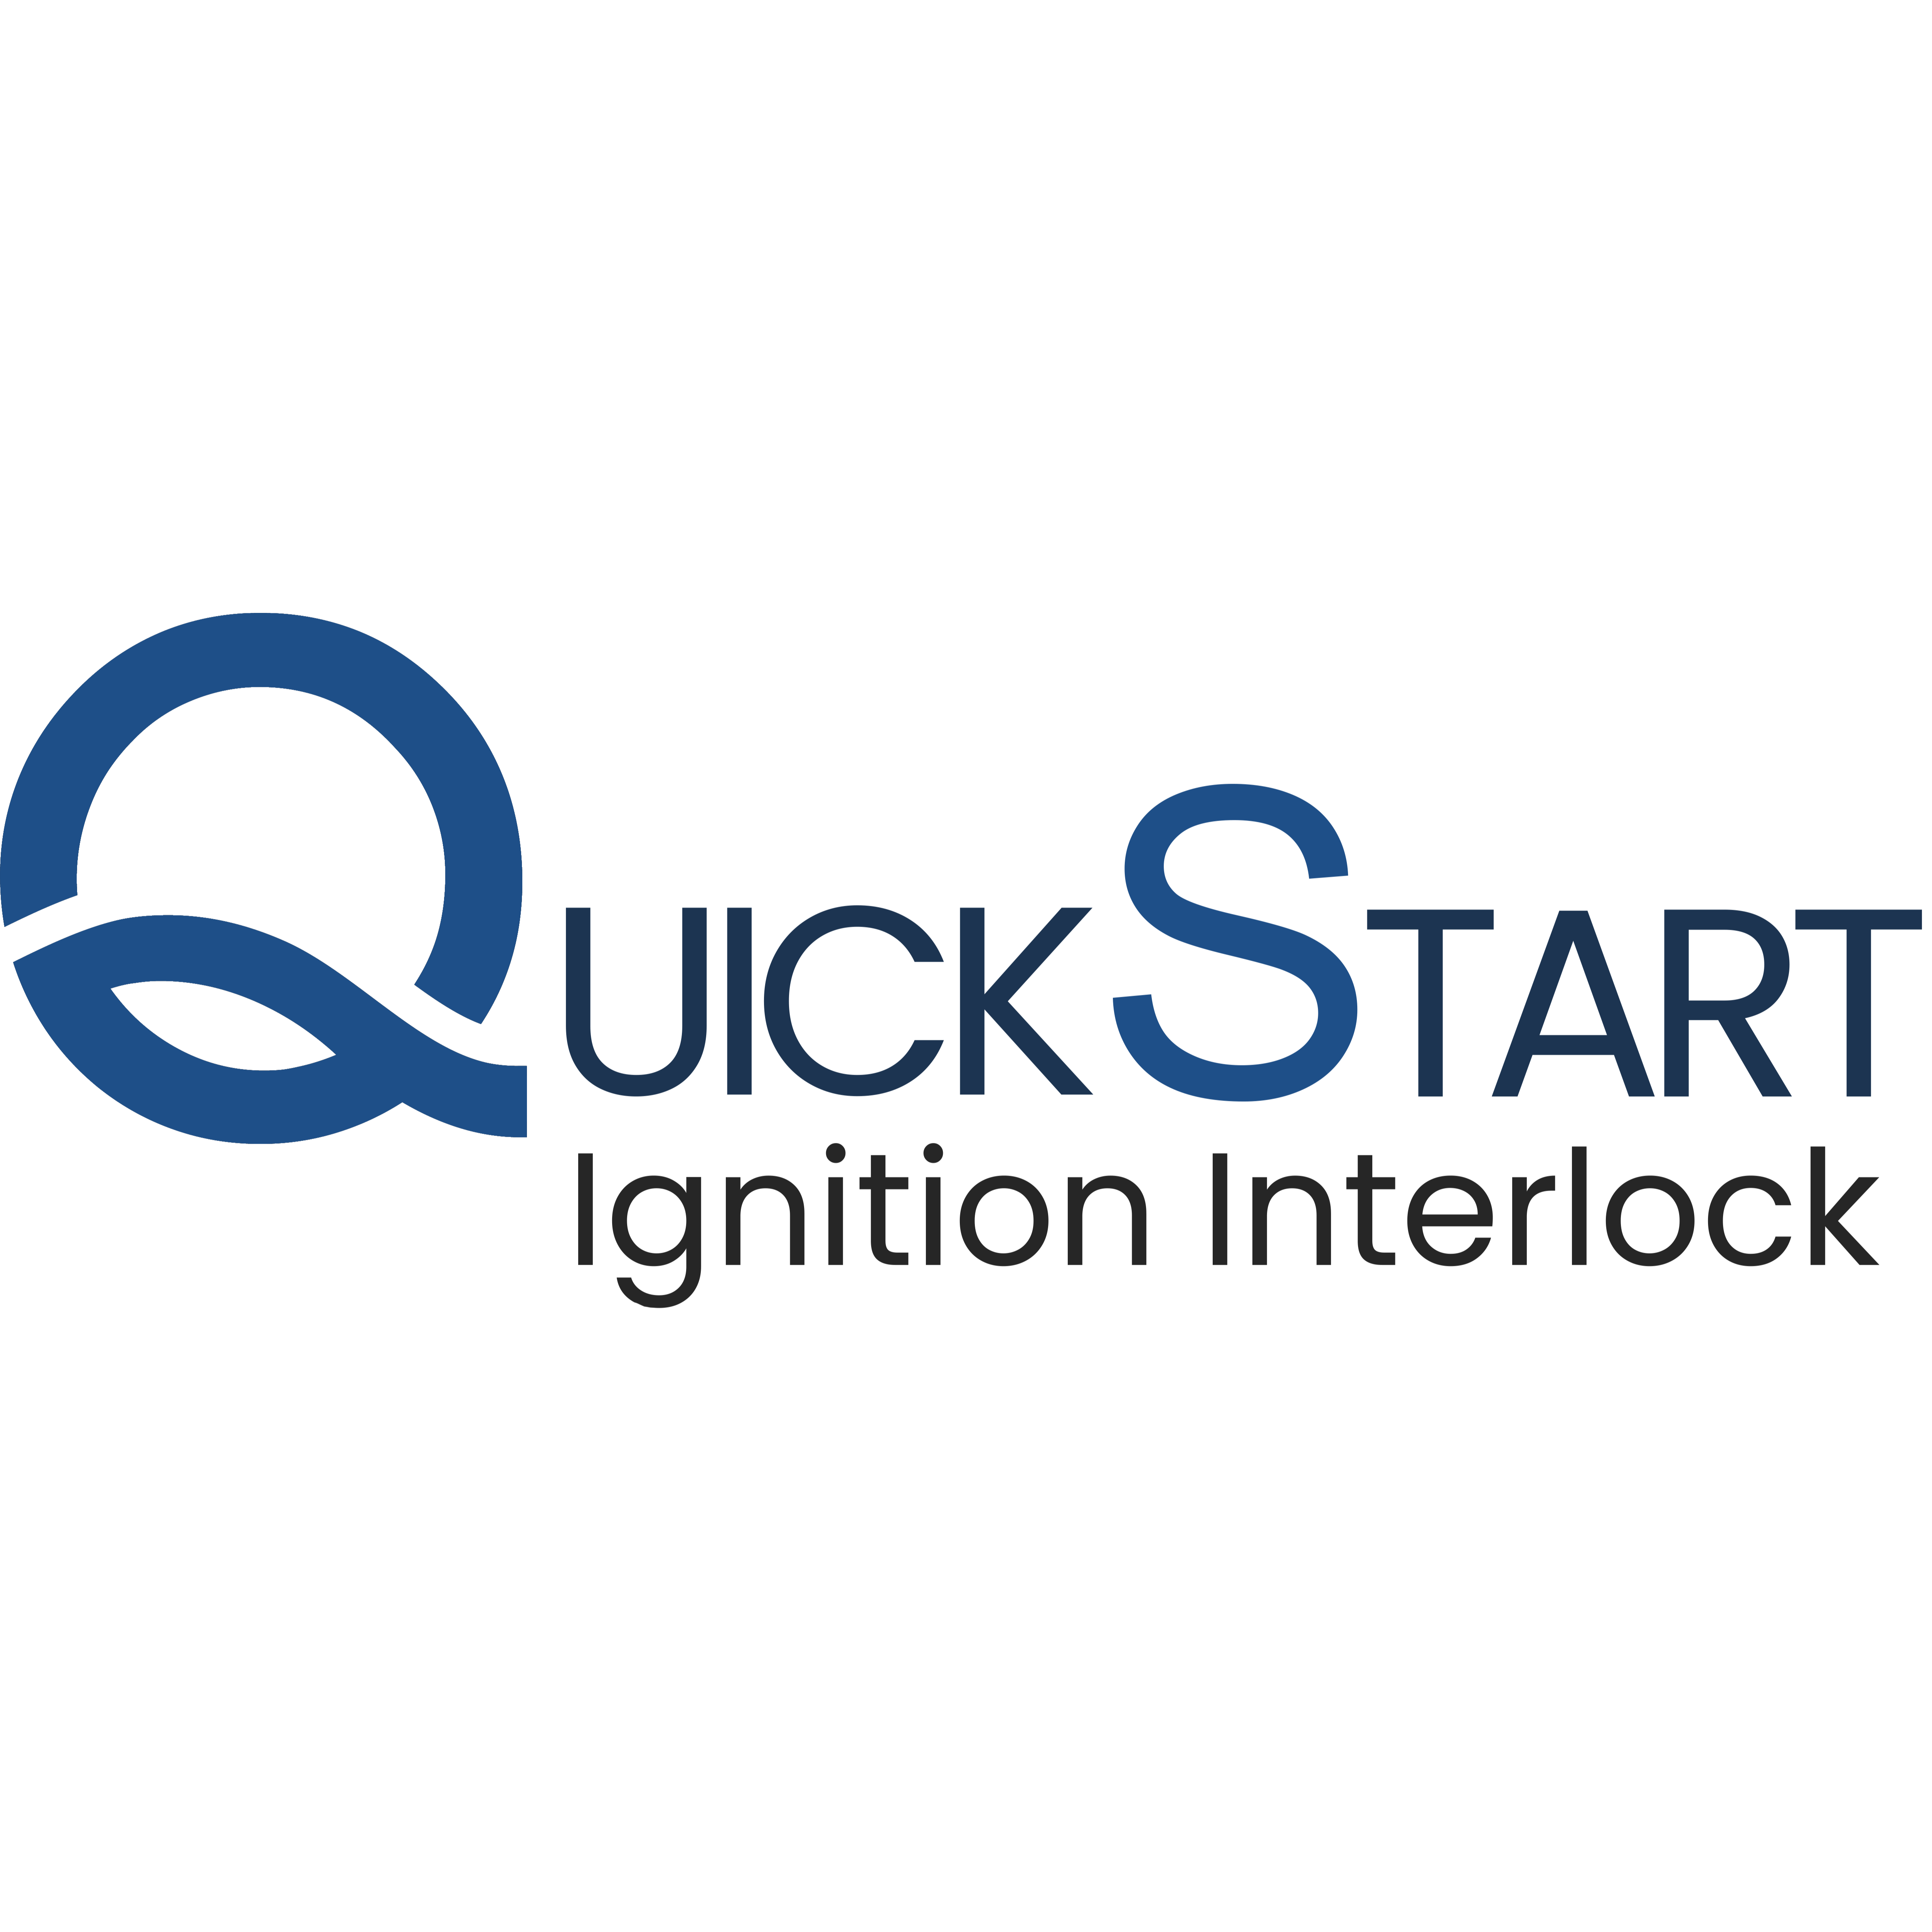 QuickStart Ignition Interlock - Chandler, AZ 85225 - (480)409-0532 | ShowMeLocal.com